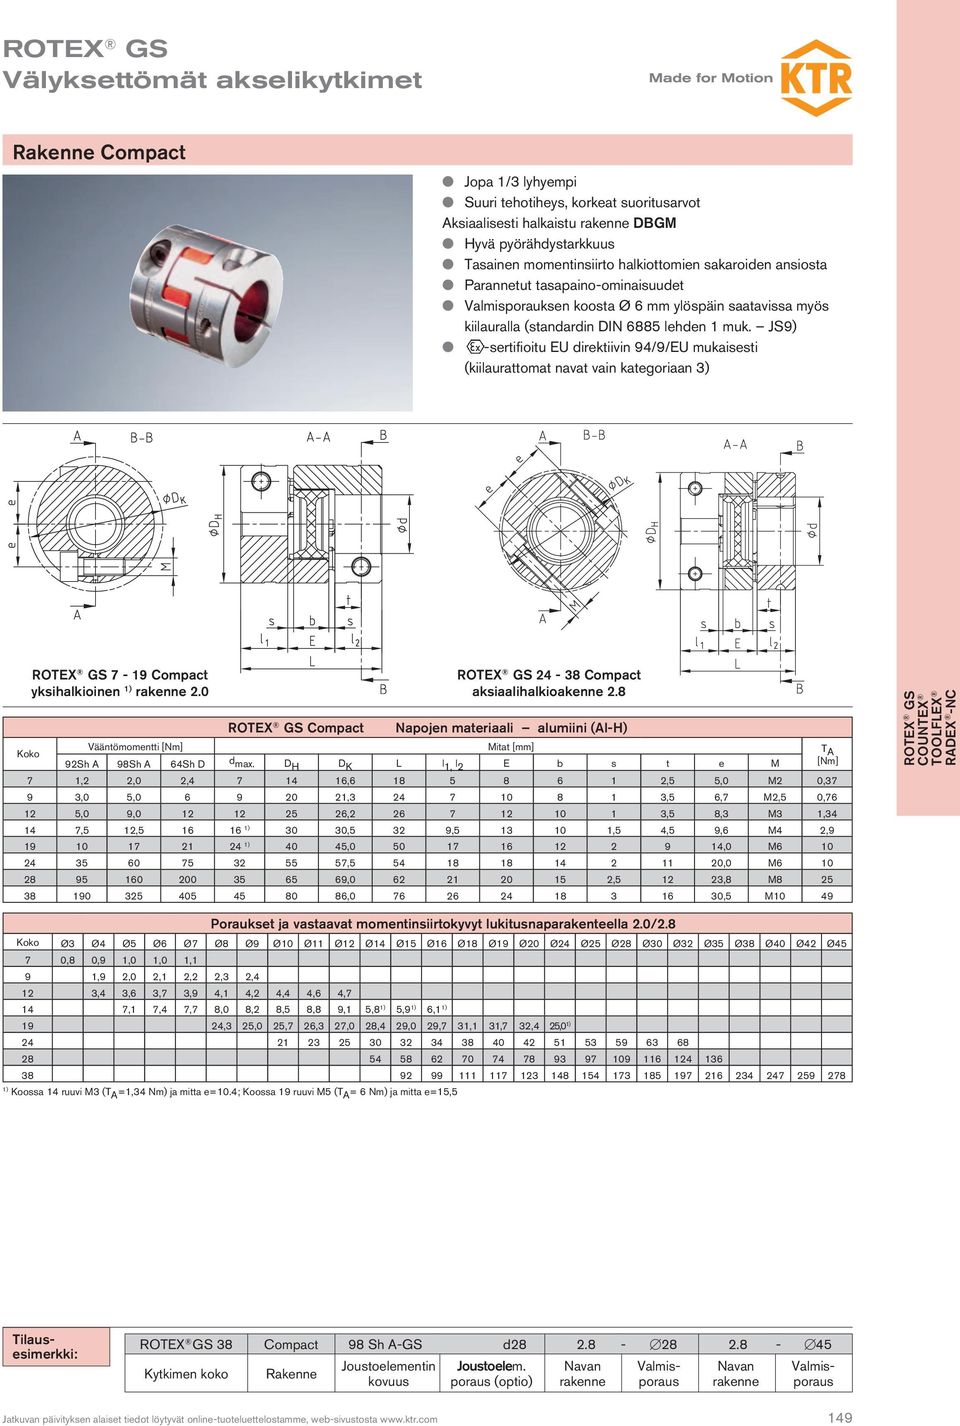 J9) l -sertifioitu EU direktiivin 94/9/EU mukaisesti (kiilaurattomat navat vain kategoriaan 3) ROTEX G 7-19 Compact yksihalkioinen 1) 2.0 ROTEX G Compact ROTEX G 24-38 Compact aksiaalihalkioakenne 2.